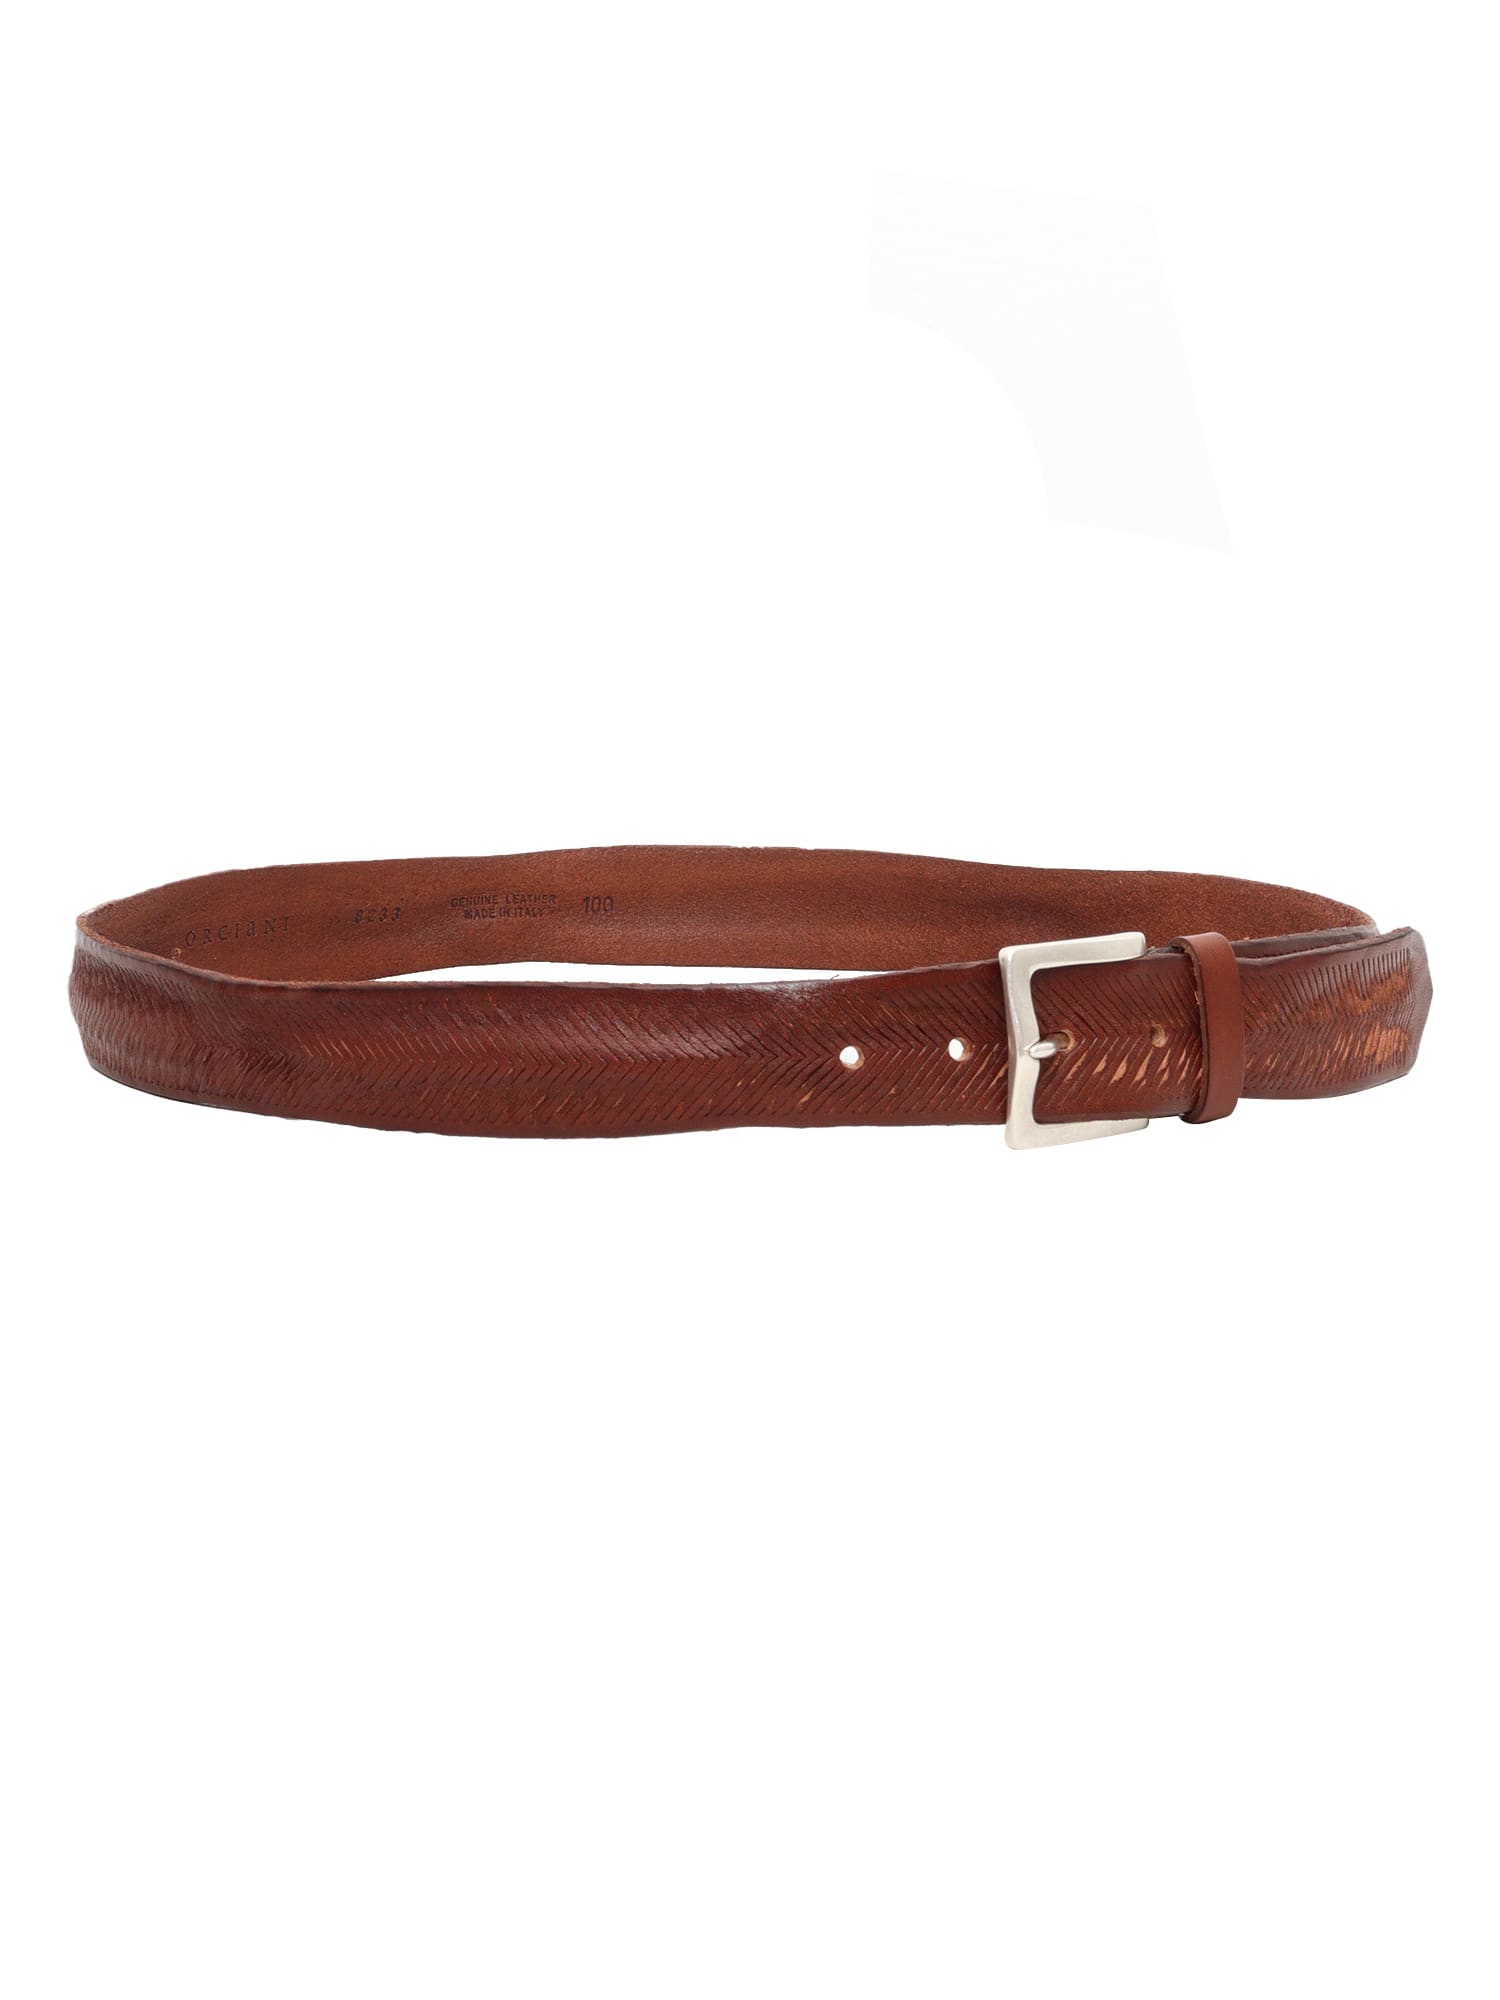 Shop Orciani Carved Brown Belt